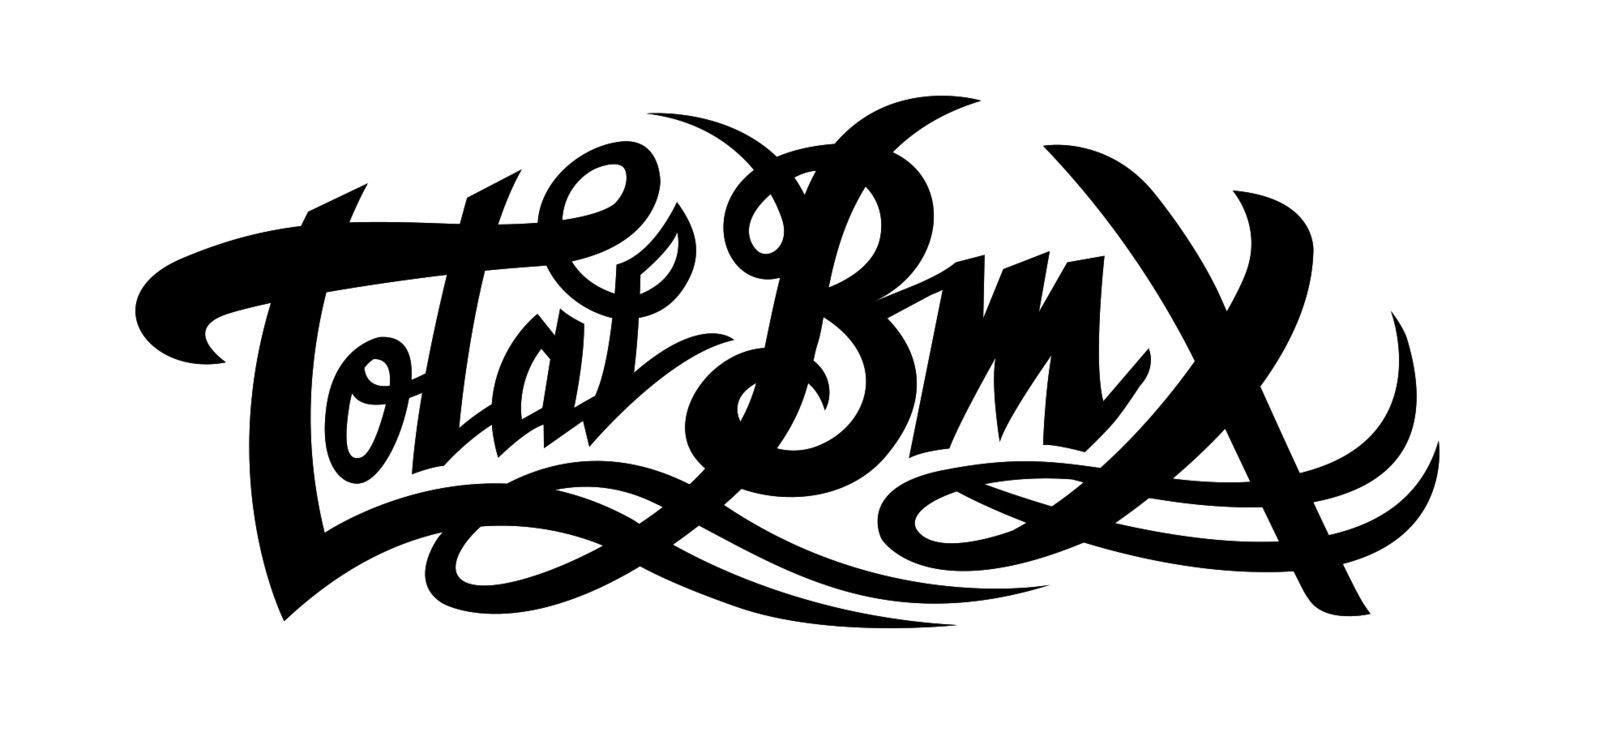 Awesome BMX Logo - Total BMX Team Update + New Amateur Contest - BMX News Stories ...